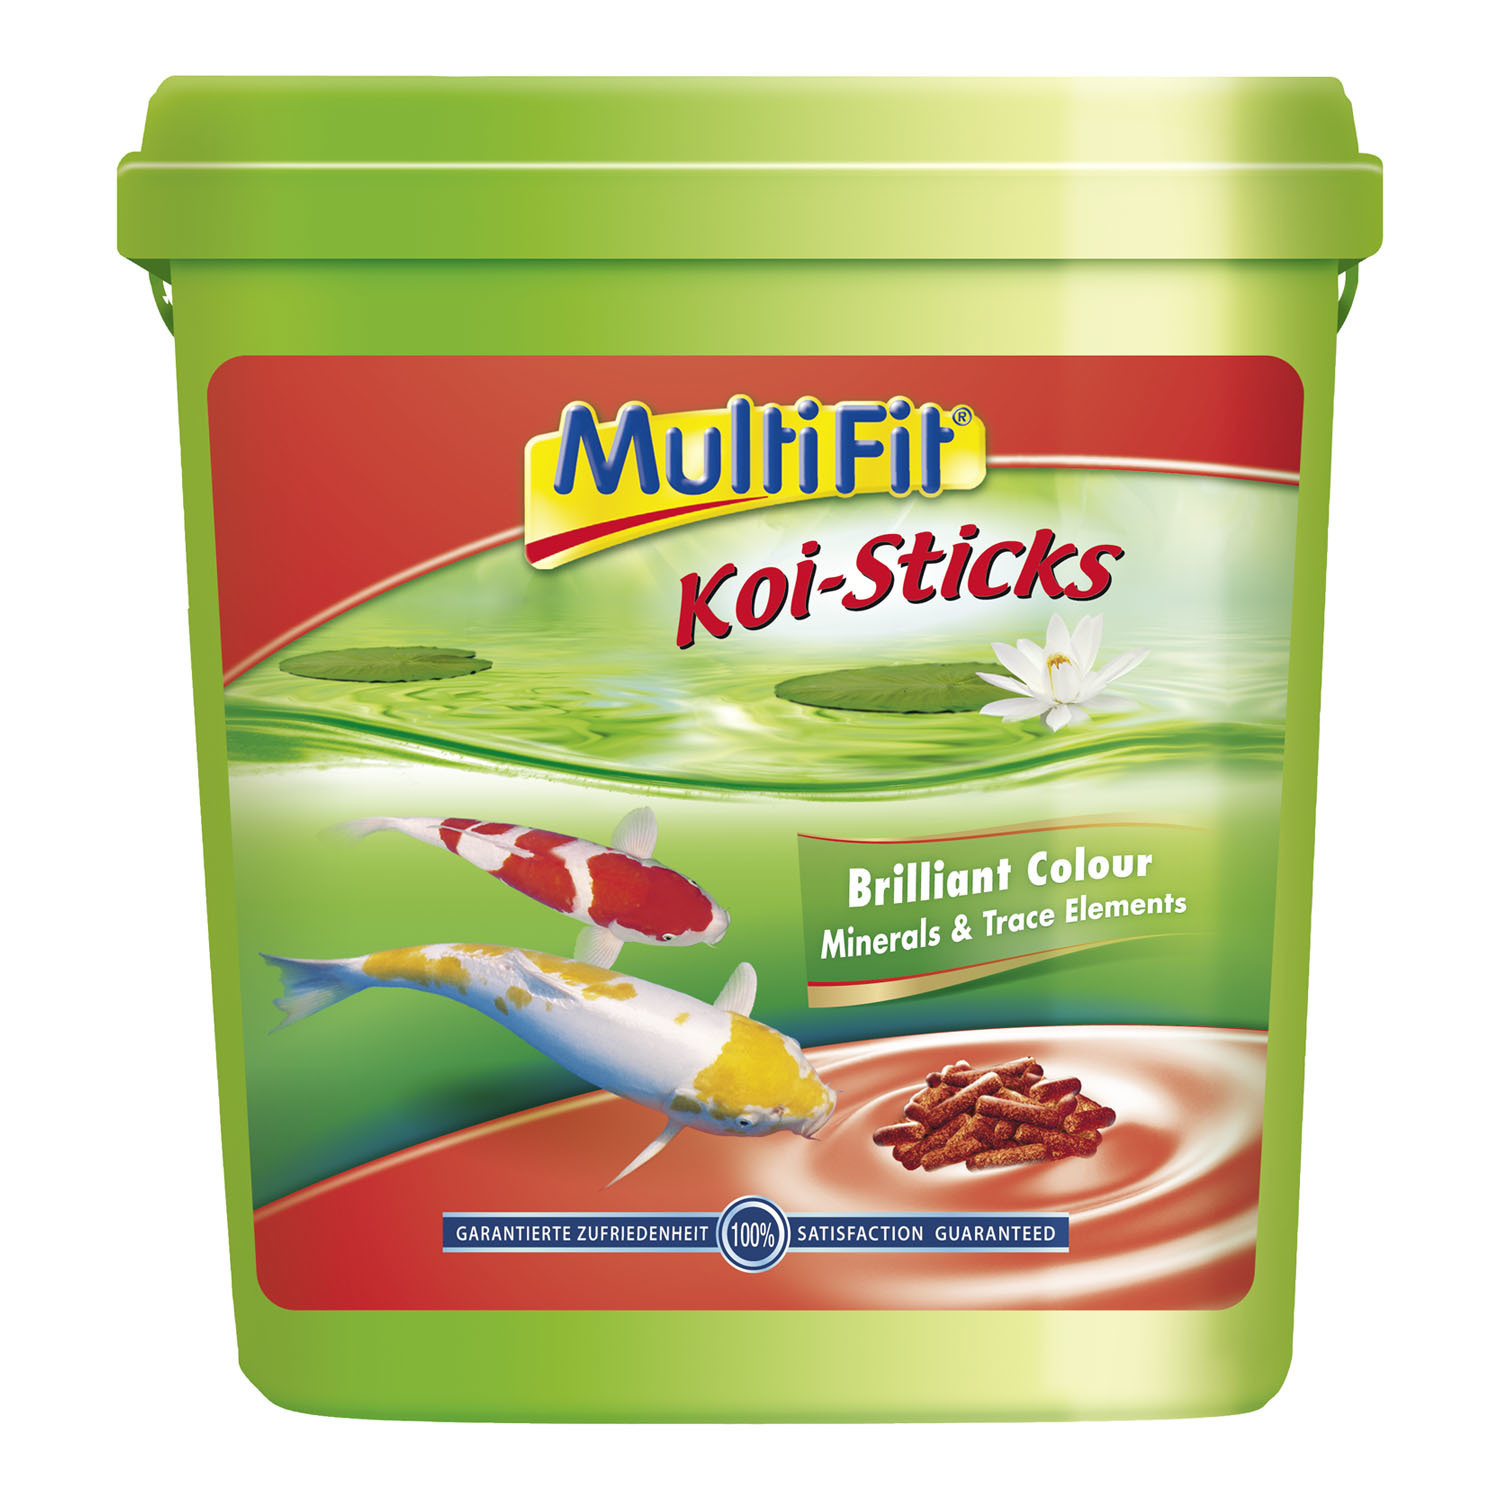 MultiFit Koi-Sticks 10 Liter